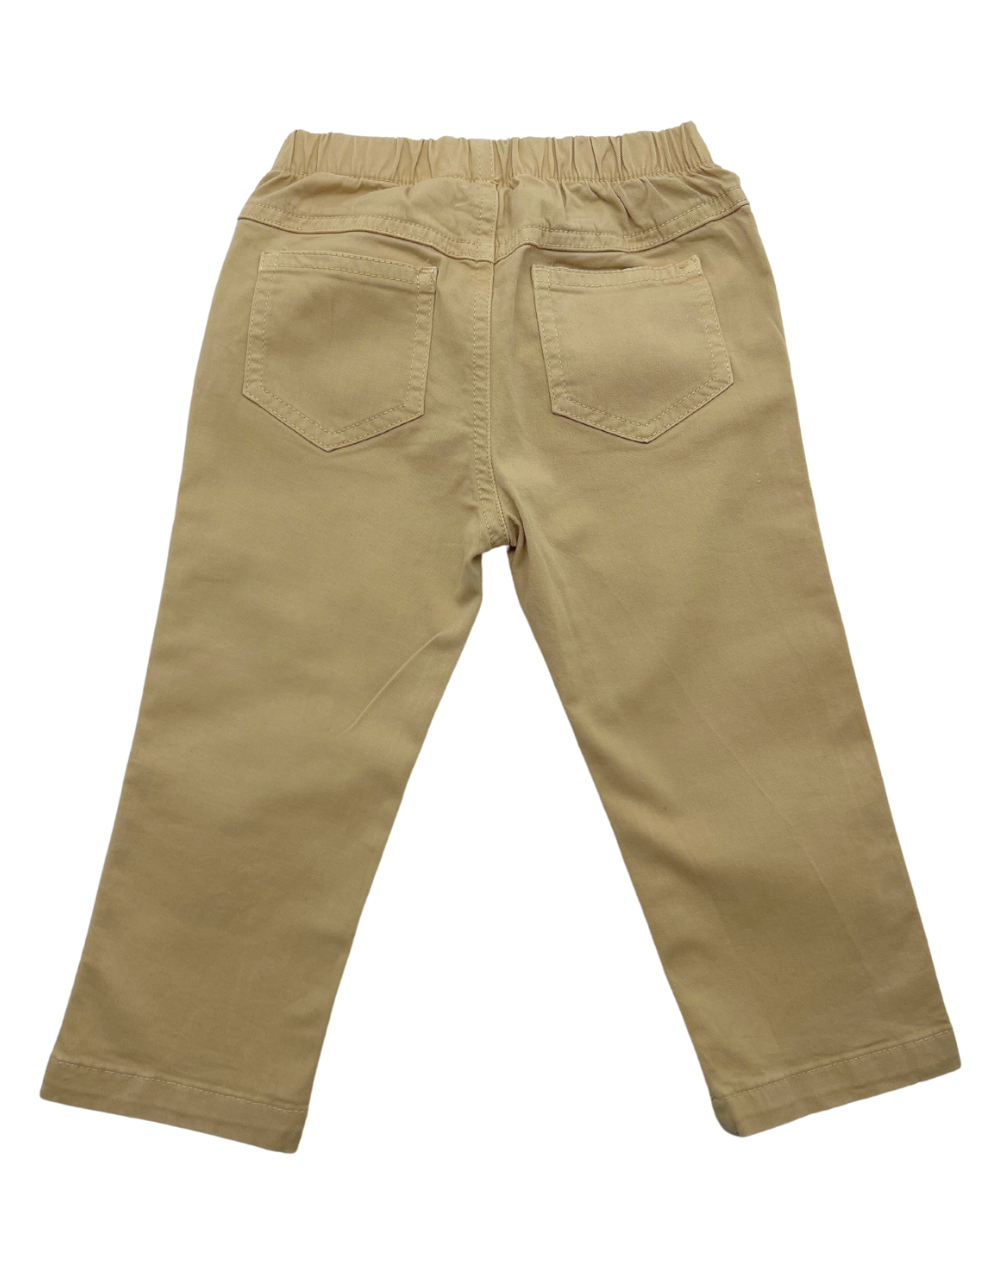 IL GUFO - Ensemble pantalon beige & t-shirt tennis - 18 mois